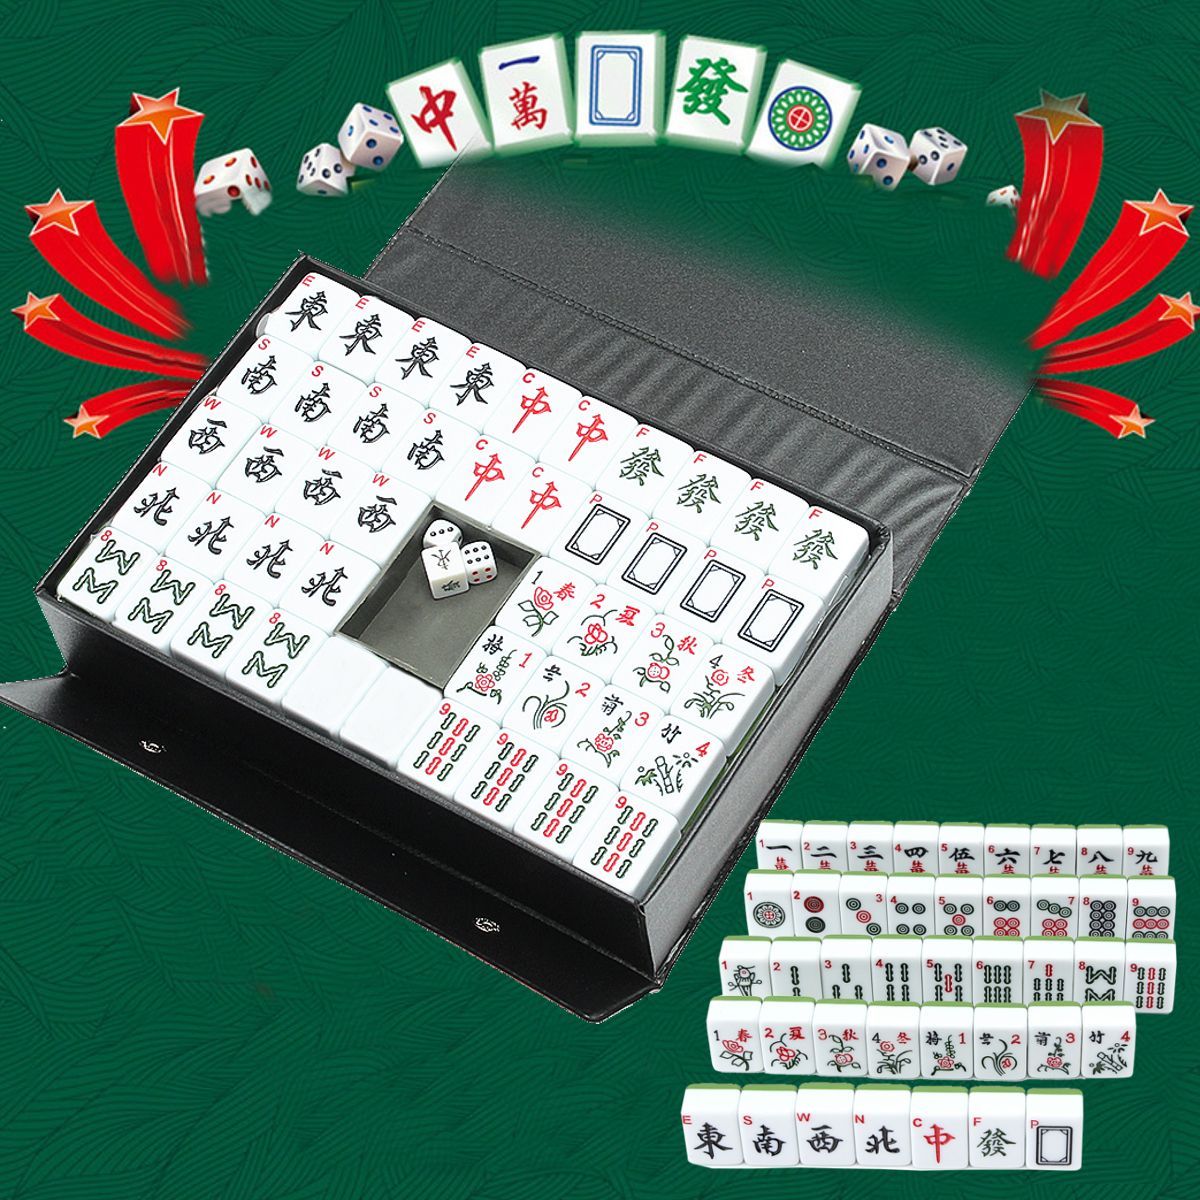 Portable-Vintage-Collection-Chinese-Mahjong-Rare-Game-144-Tiles-Mah-Jong-Set-1706671